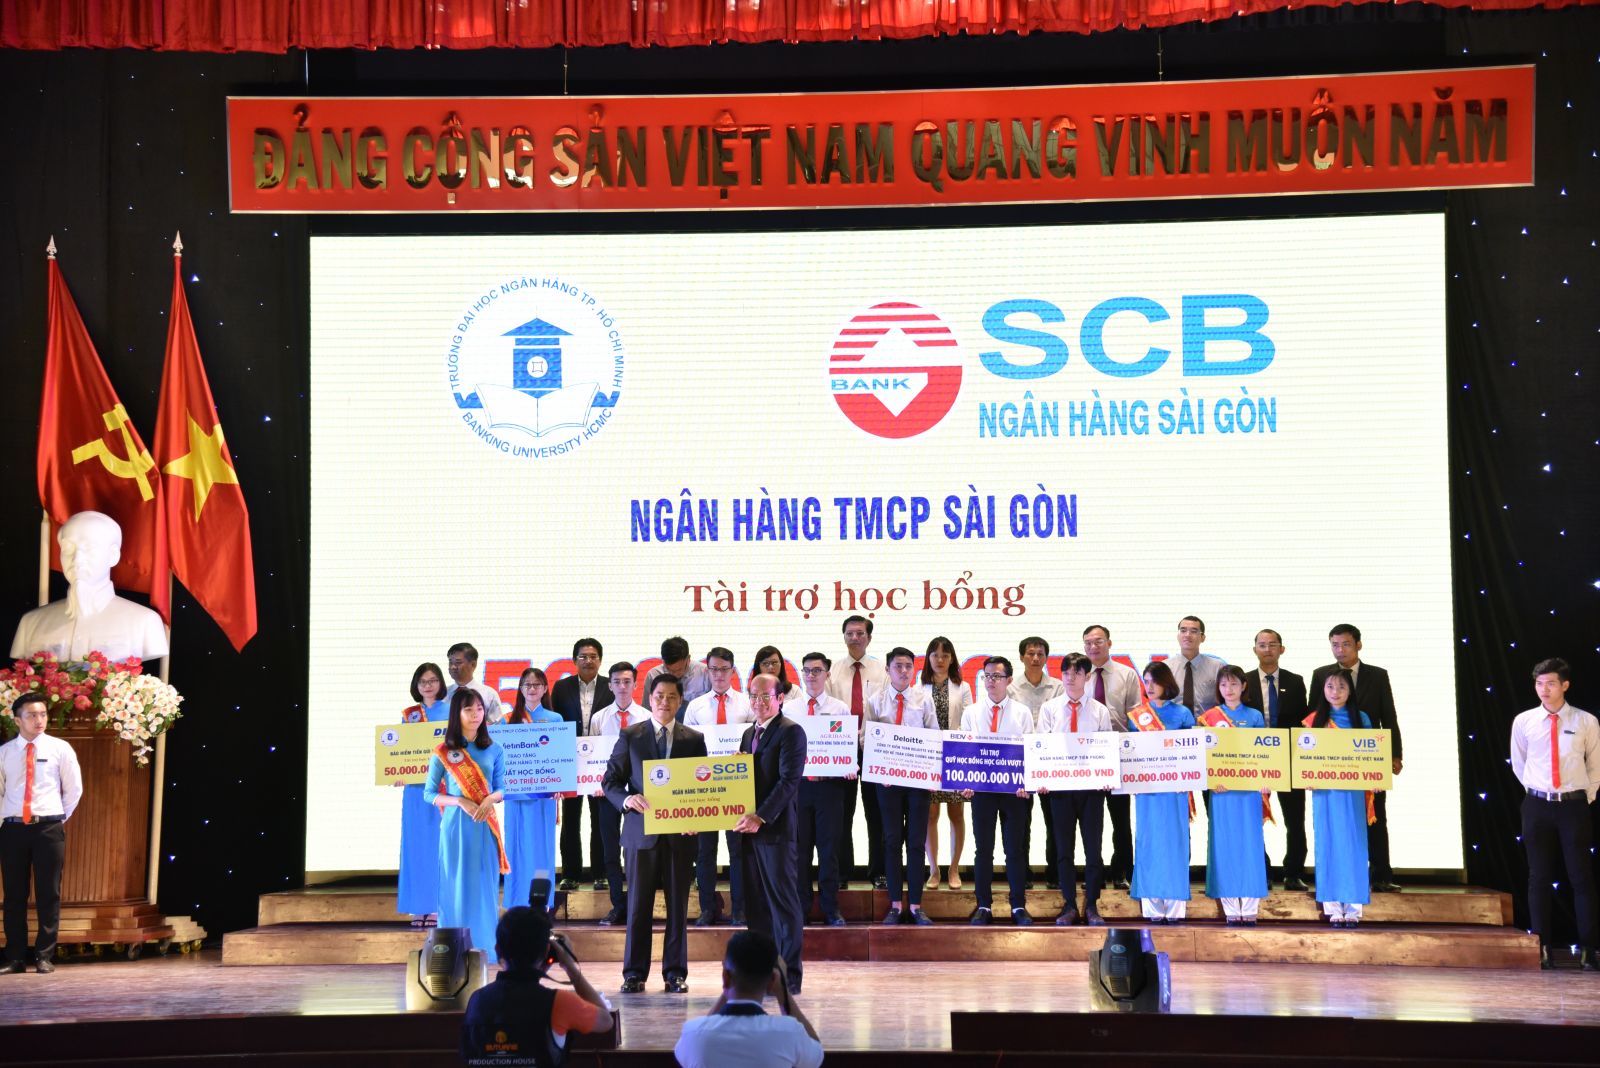 Ông Nguyễn Ngọc Sơn – Giám đốc Học viện SCB đã trao học bổng trị giá 50 triệu đồng cho “Quỹ học bổng BUH” của Trường Đại học Ngân hàng TP.HCM.